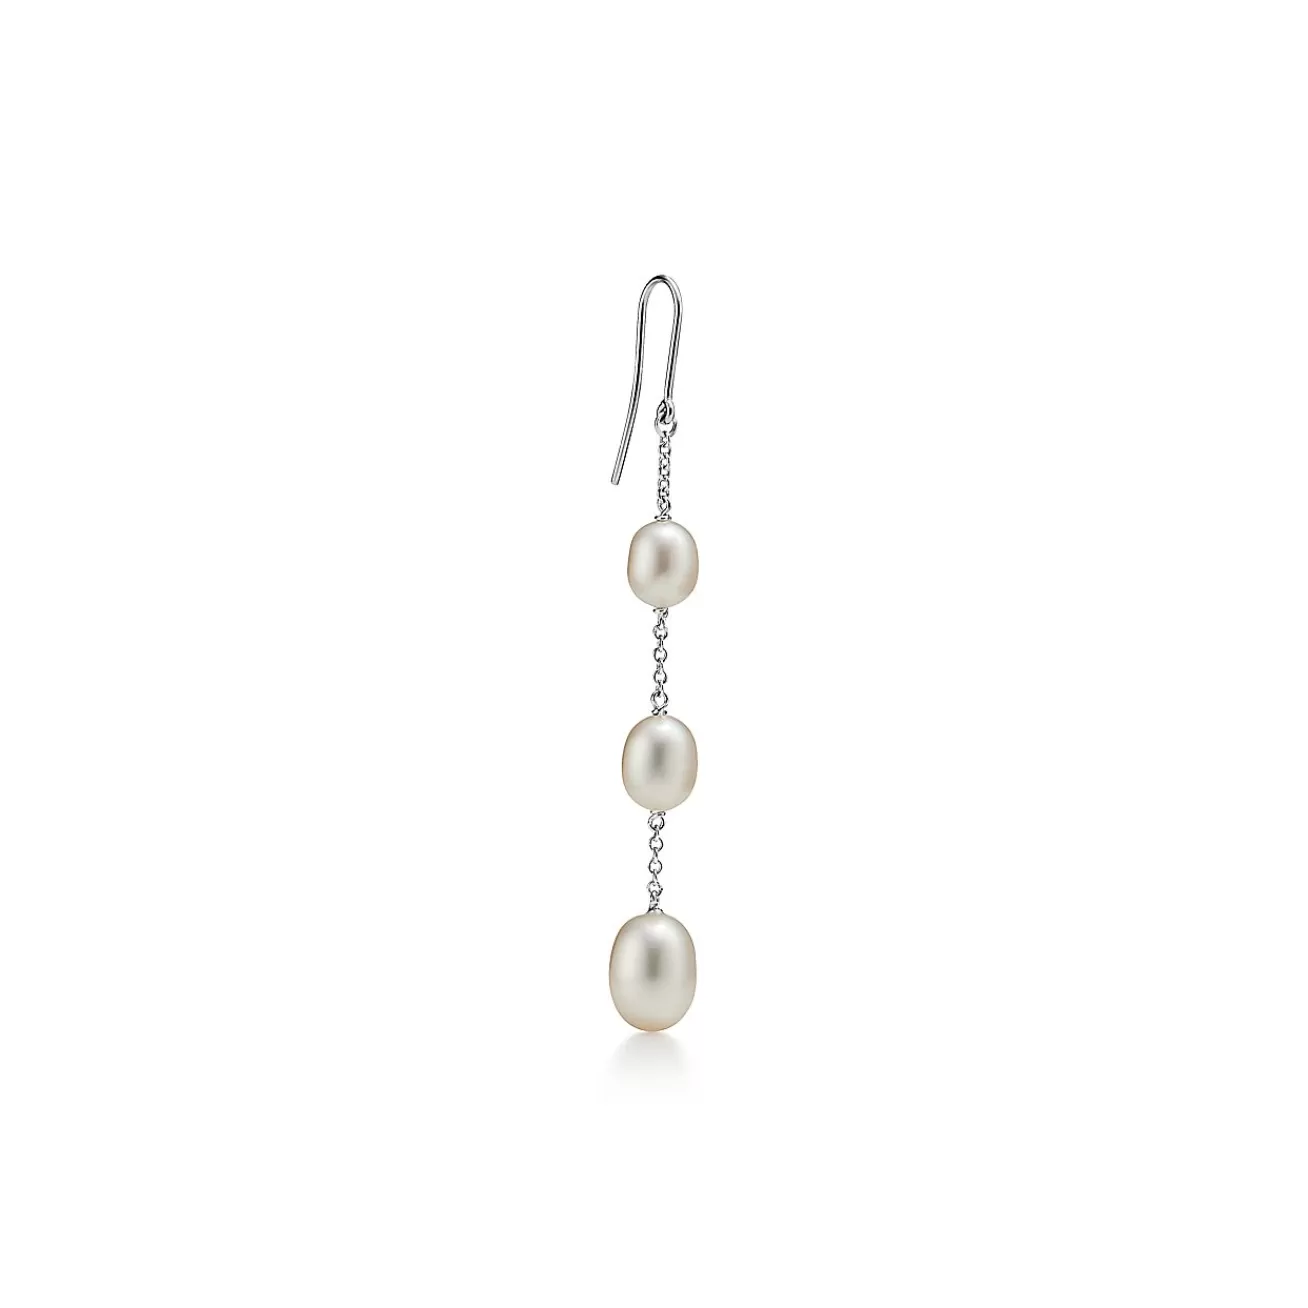 Tiffany & Co. Elsa Peretti® Pearls by the Yard™ chain earrings in sterling silver. | ^ Earrings | Sterling Silver Jewelry